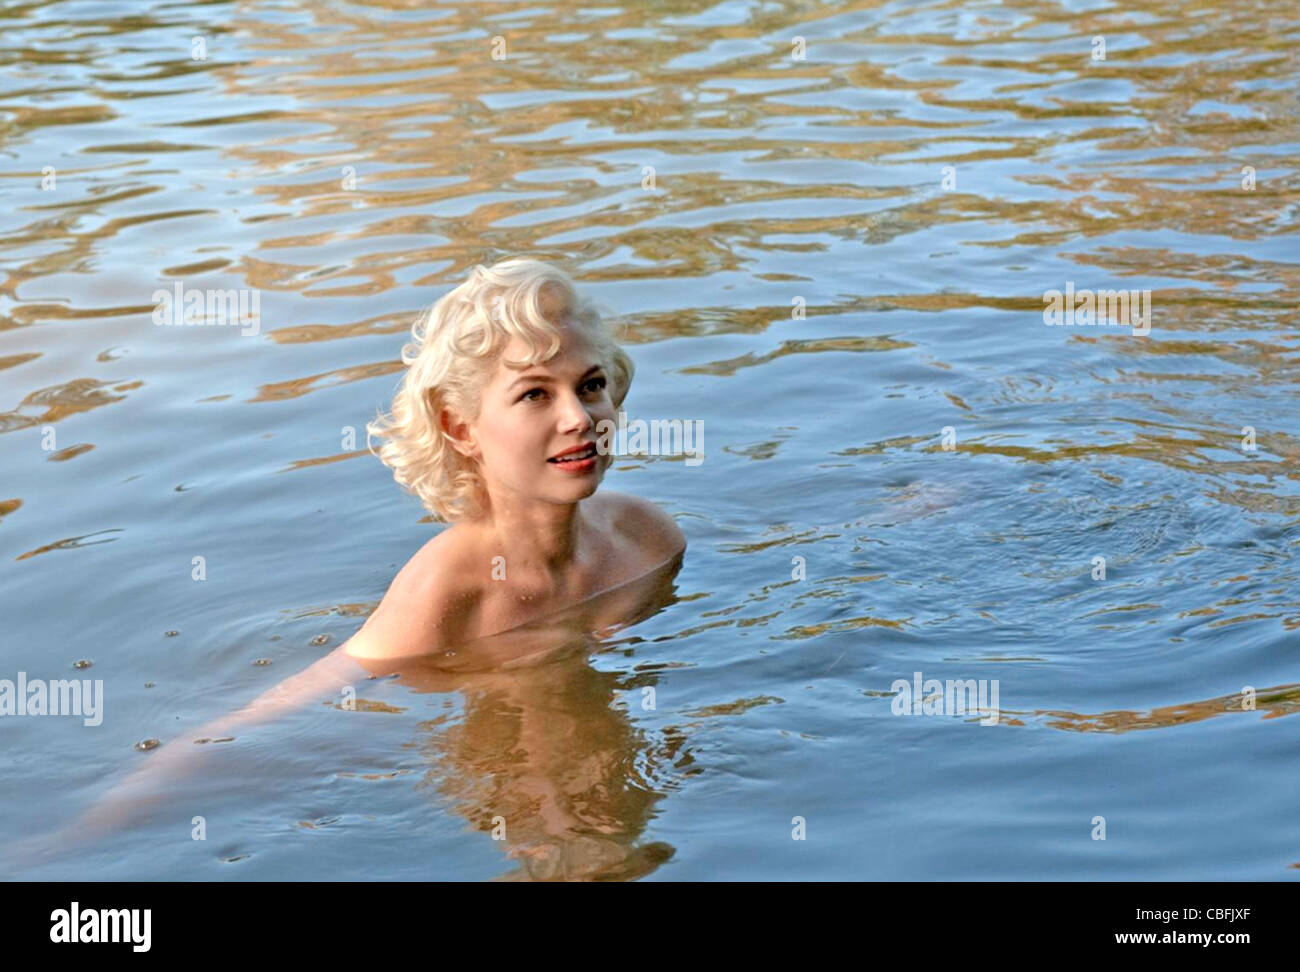 MEINE Woche mit MARILYN 2011 Weinstein Company-Film mit Michelle Williams als Marilyn Monroe Stockfoto